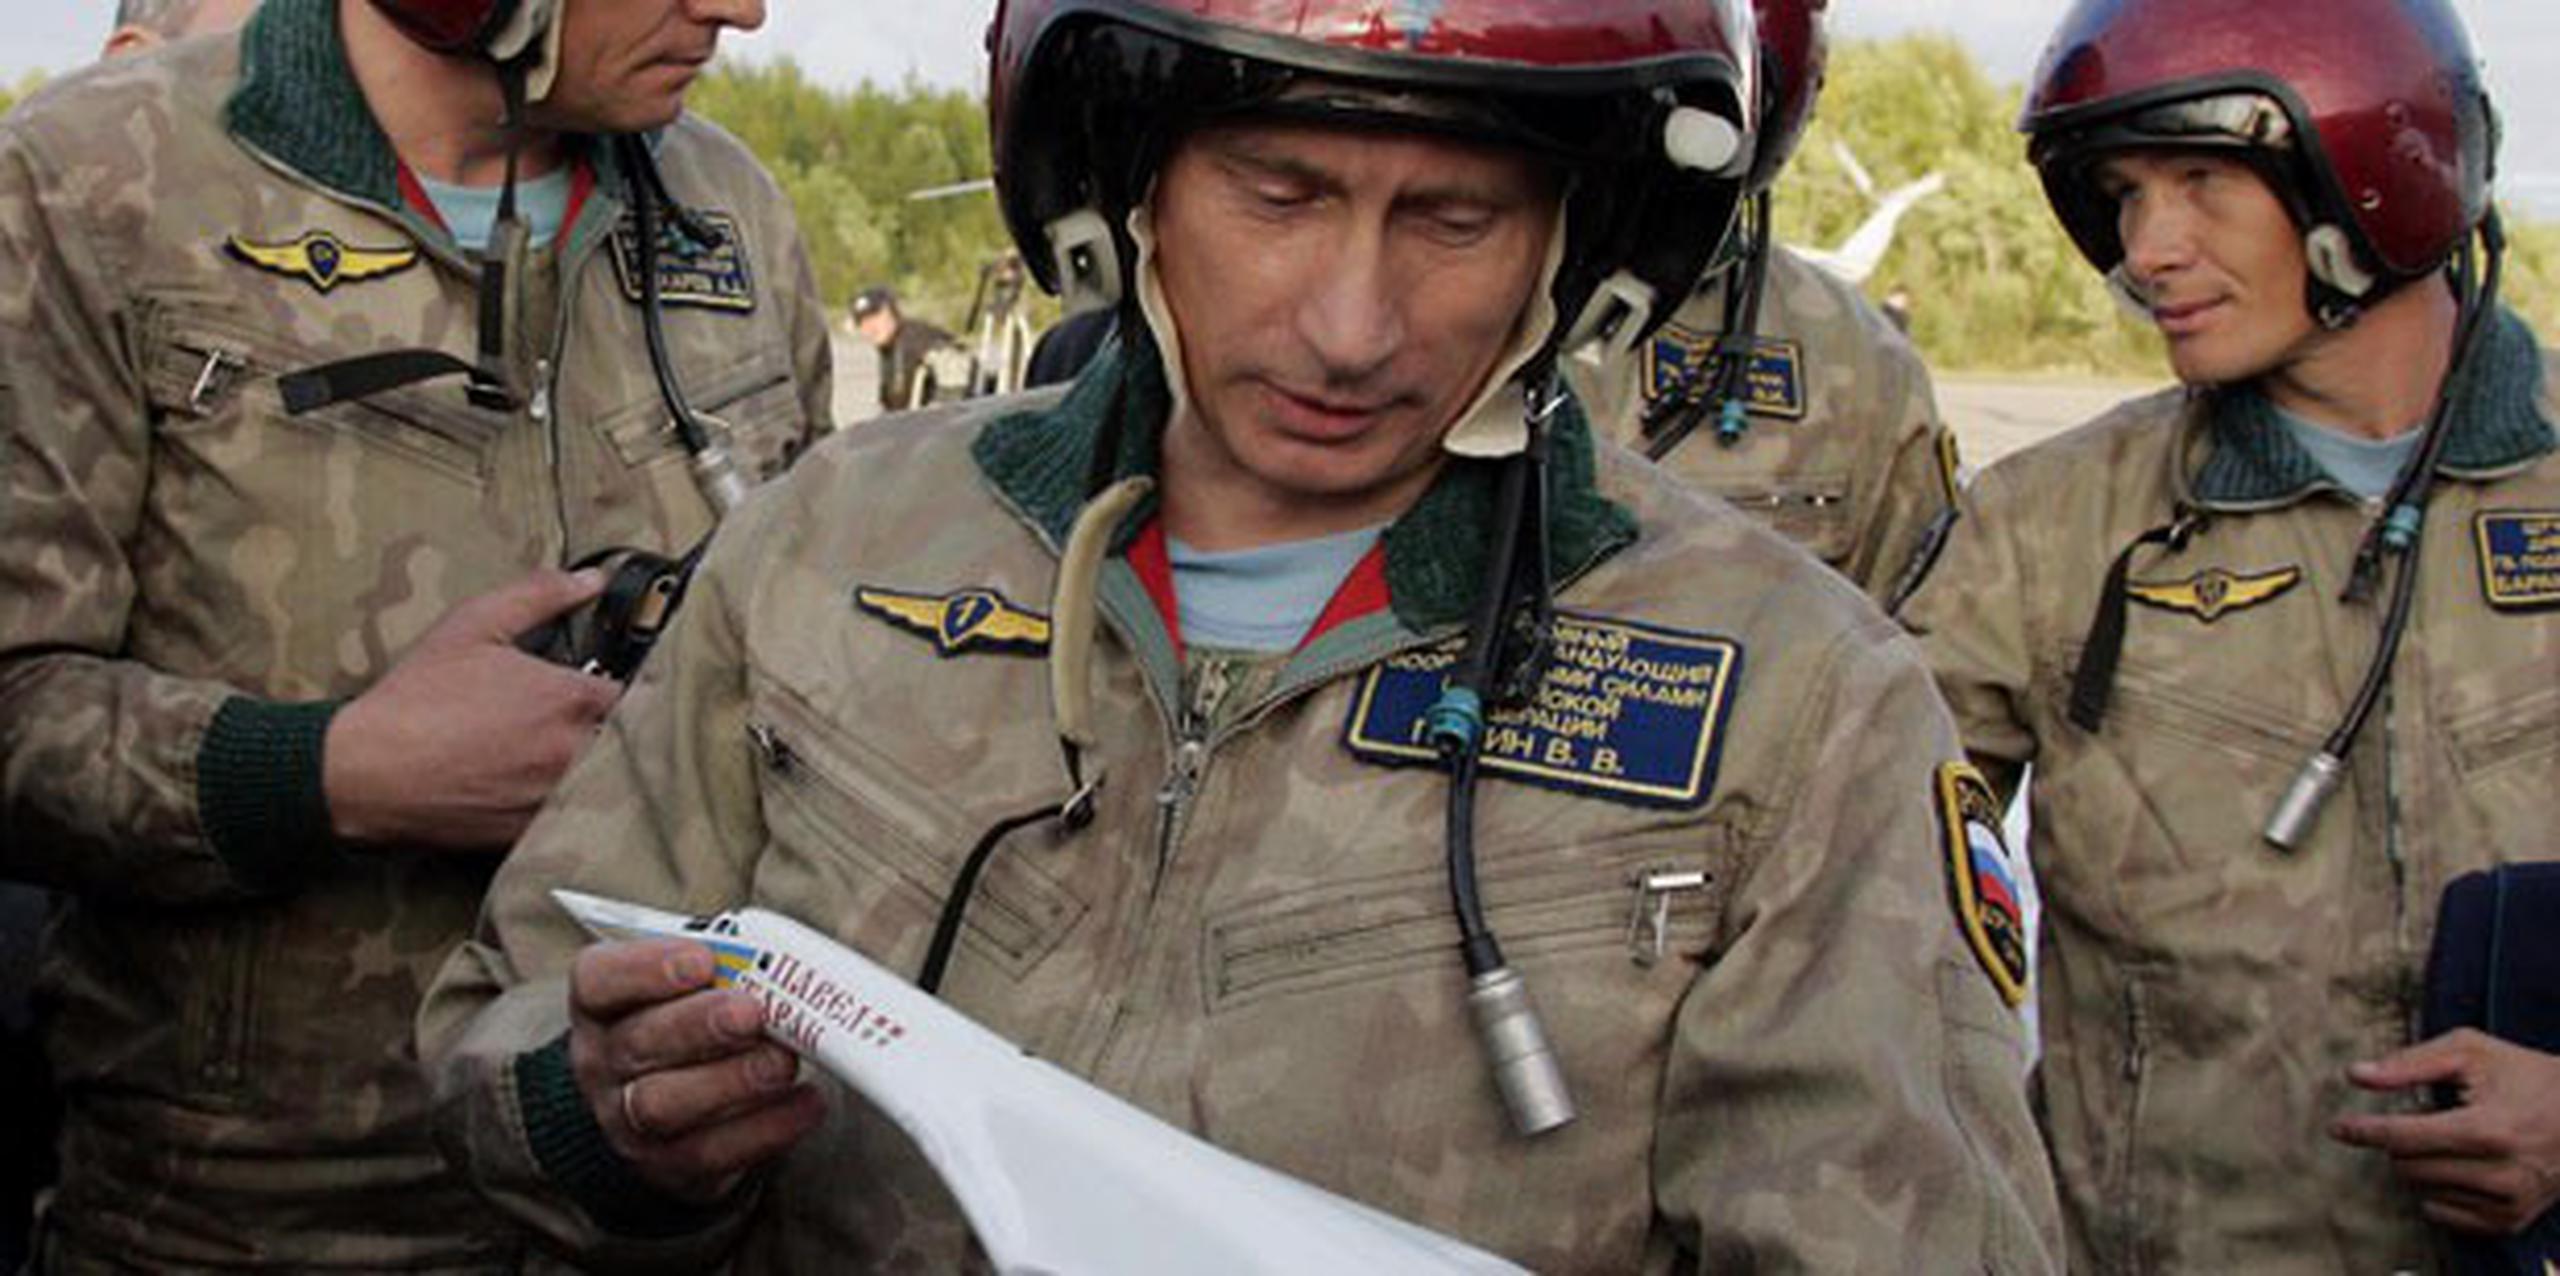 El presidente ruso Vladimir Putin reanudó los vuelos de patrulla de los bombarderos estratégicos. (AP Photo/ITAR-TASS, Presidential Press Service, Alexei Panov)
